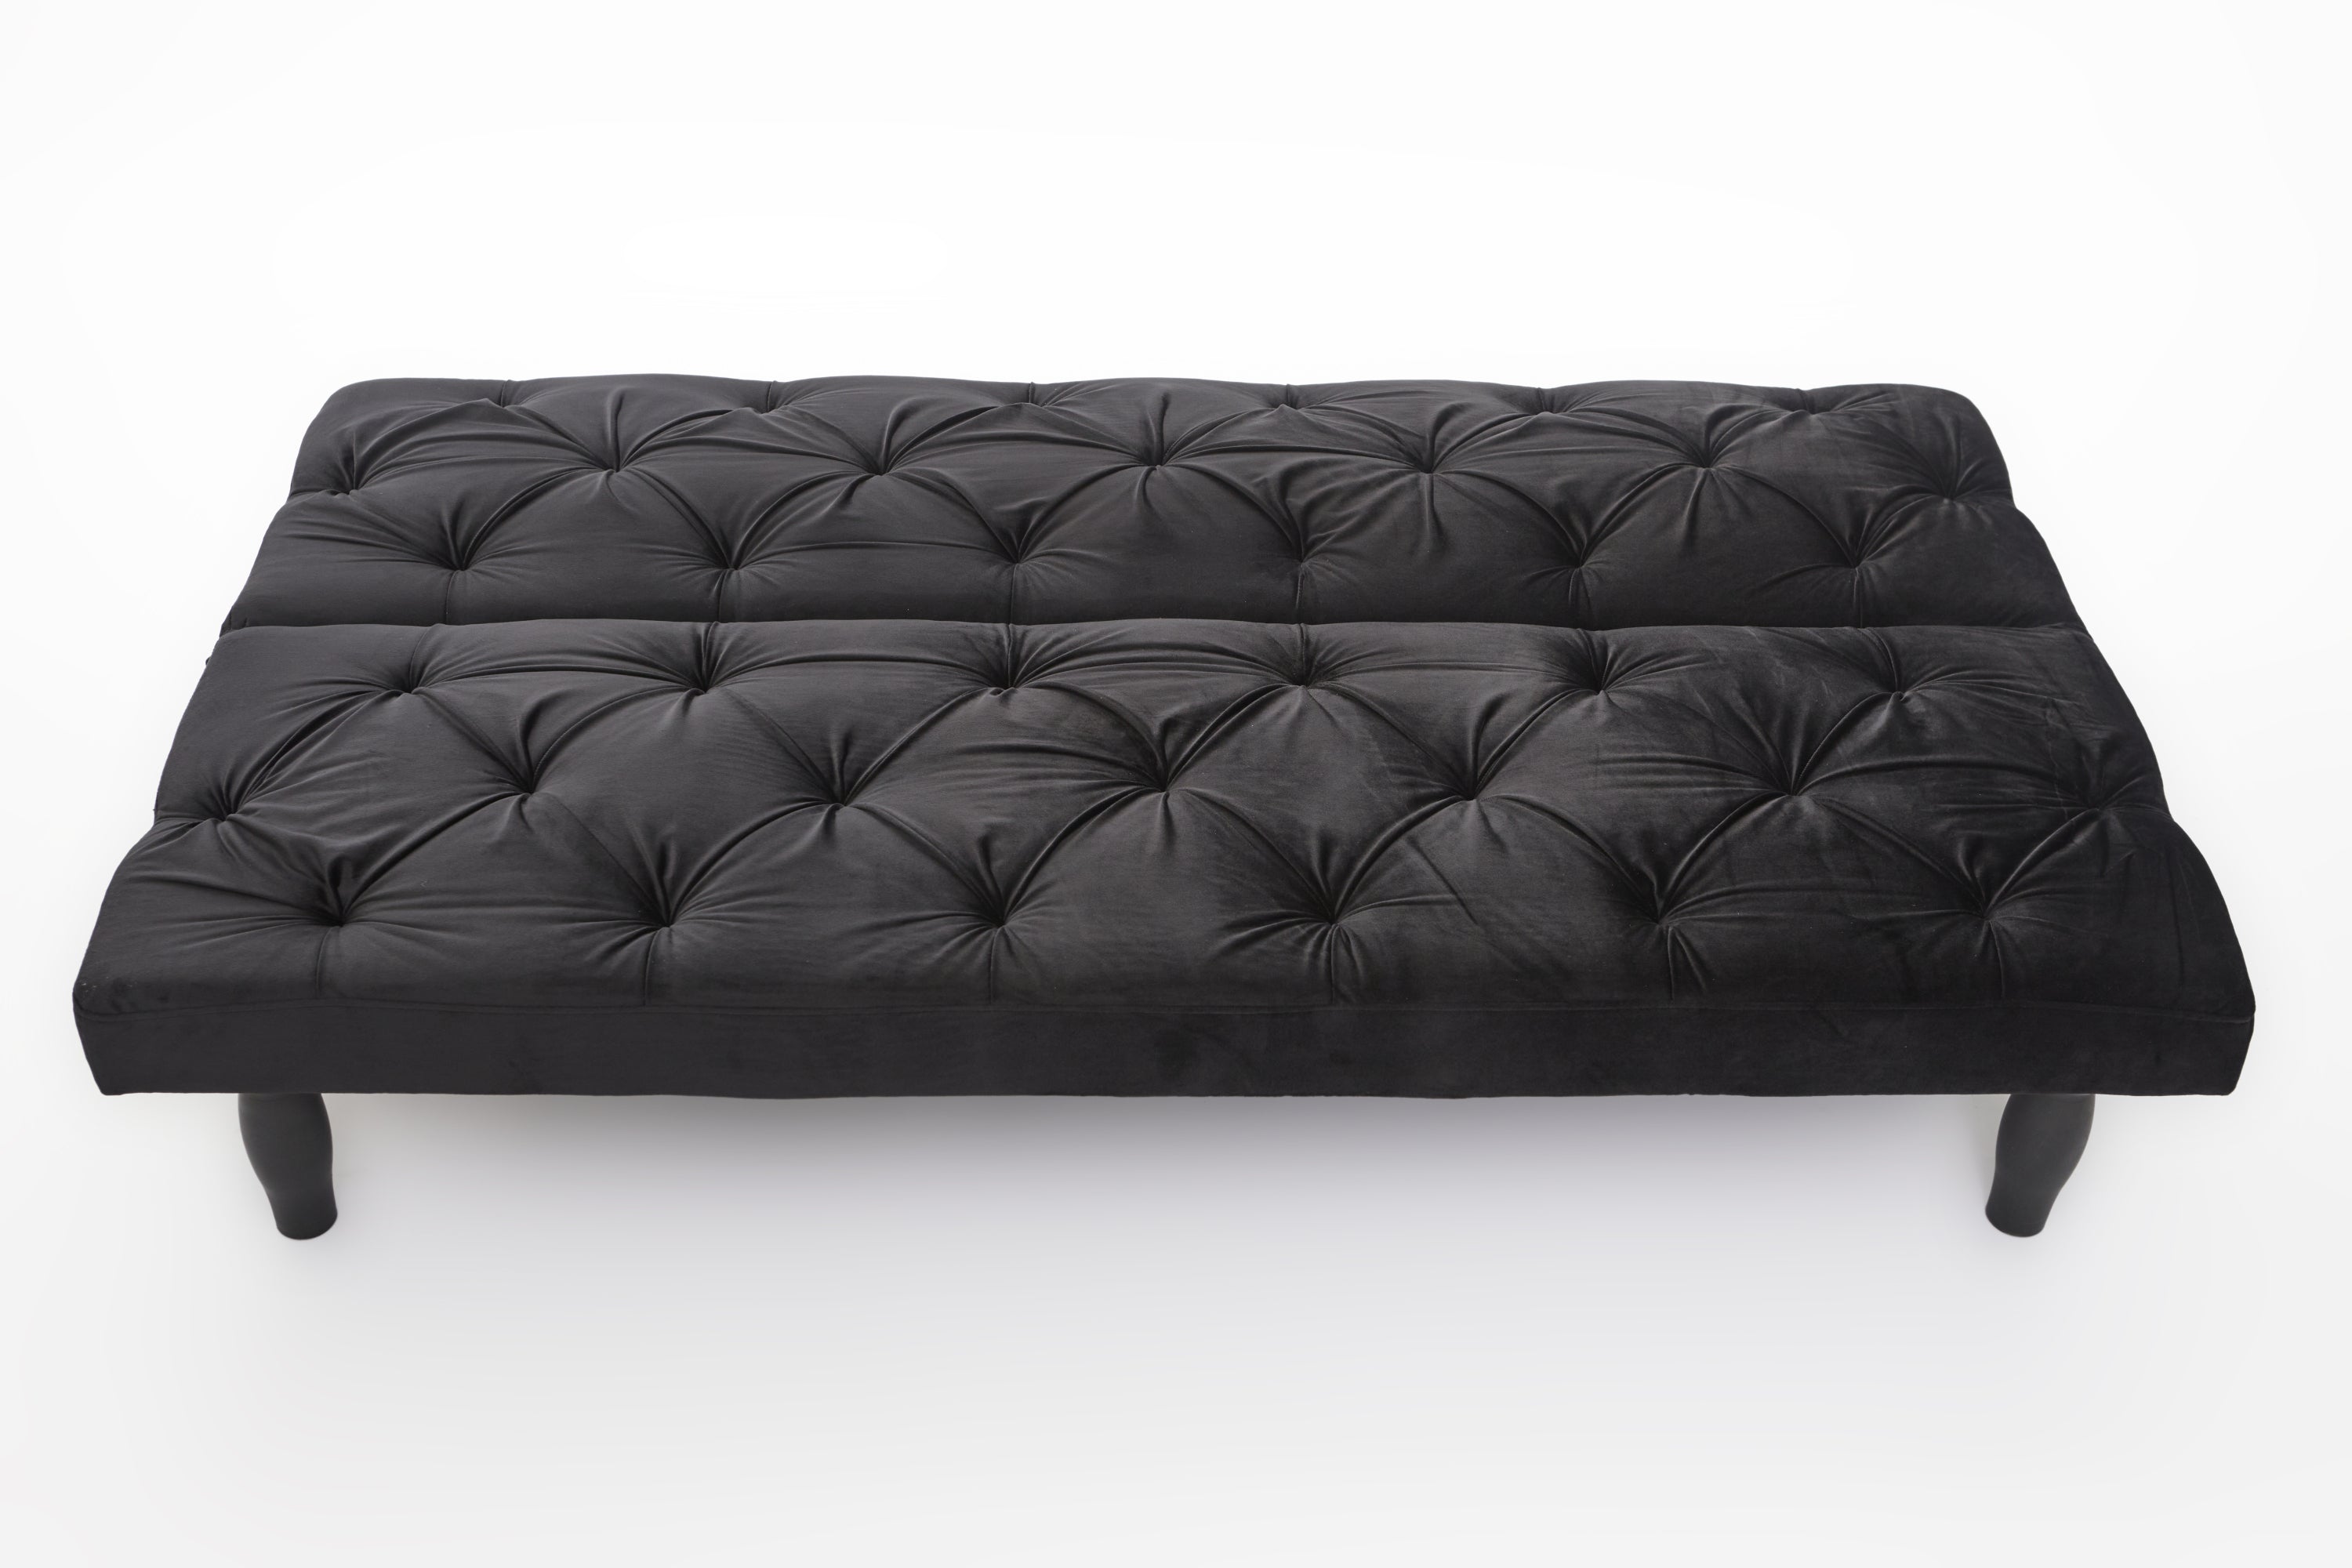 Black Velvet Sofa Bed